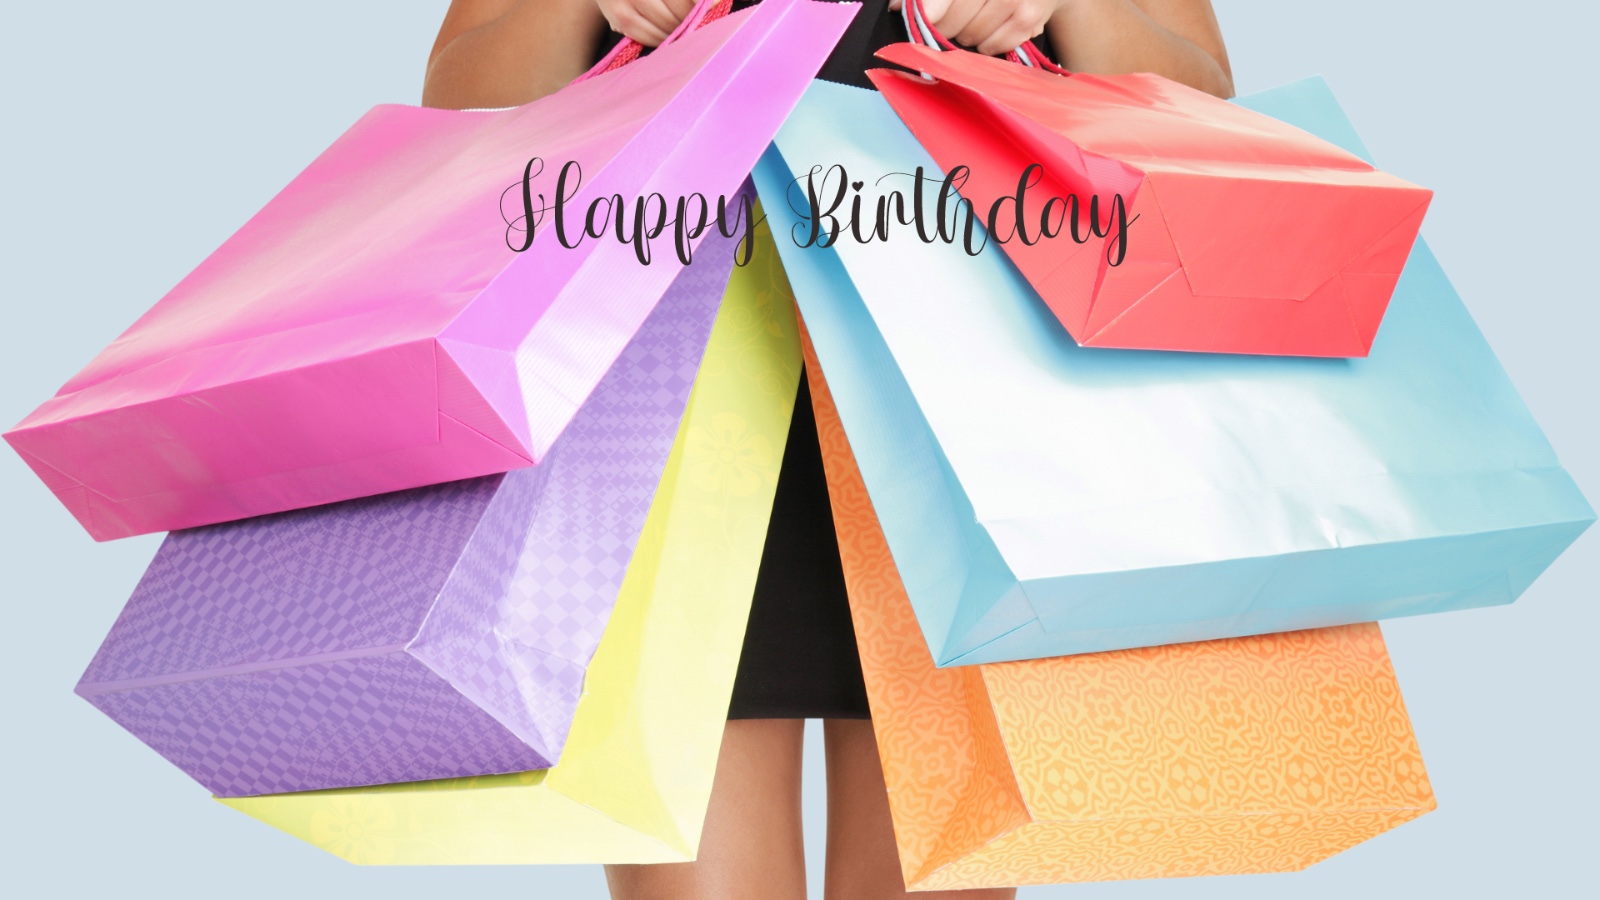 Celebra tu cumpleaños con regalos gratis